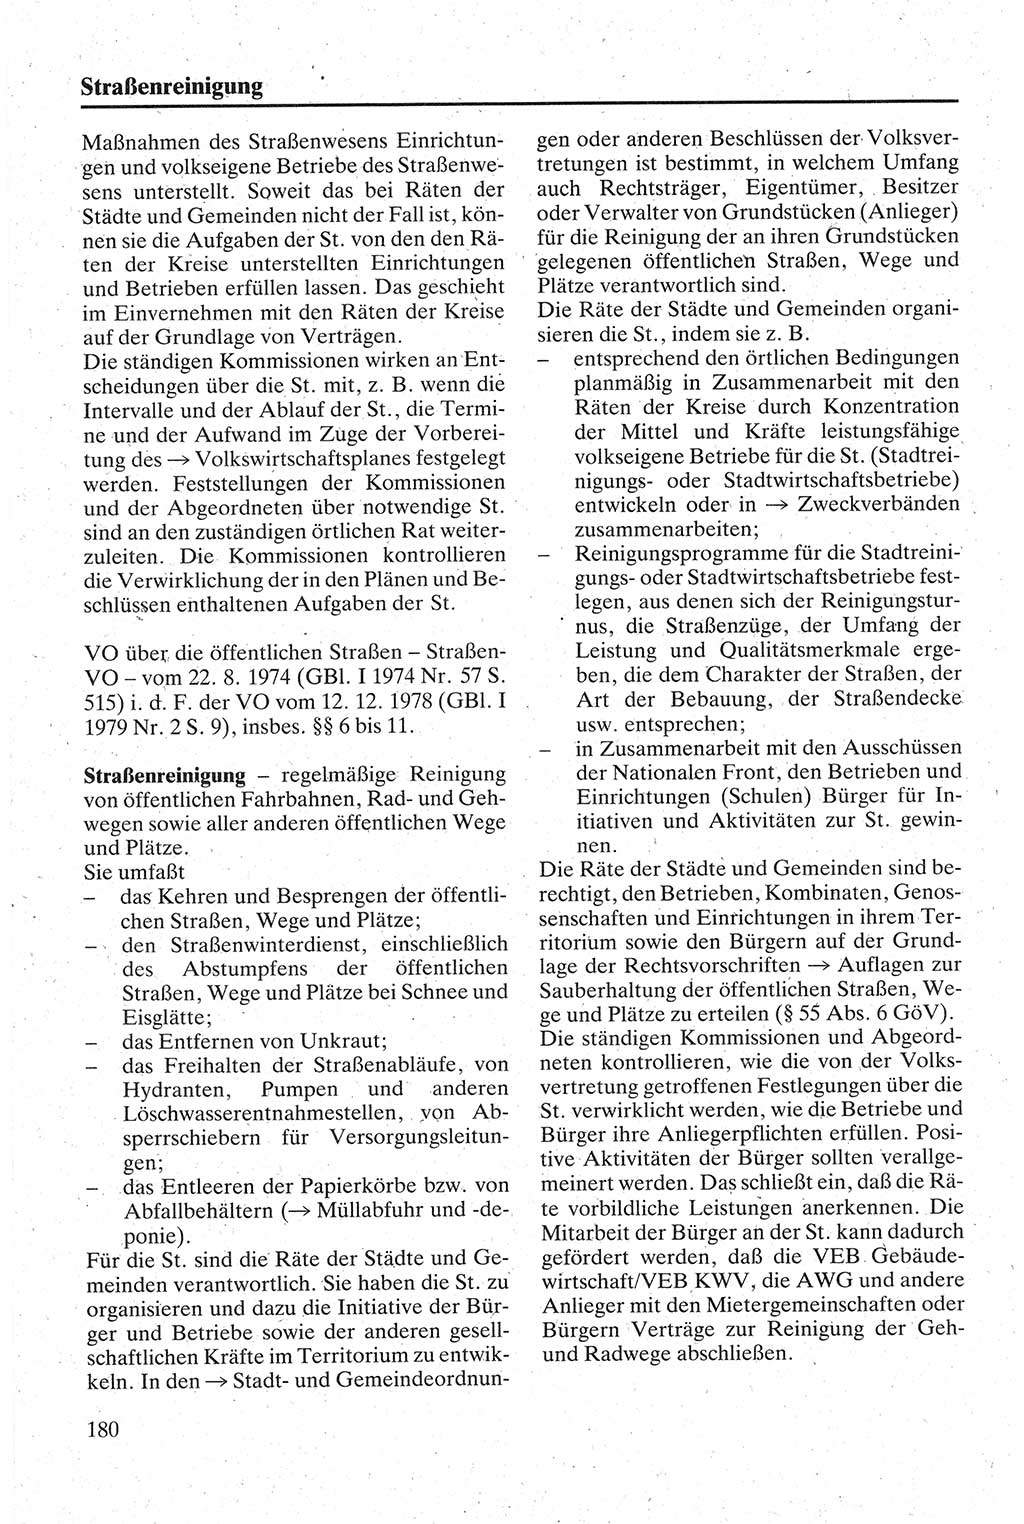 Handbuch für den Abgeordneten [Deutsche Demokratische Republik (DDR)] 1984, Seite 180 (Hb. Abg. DDR 1984, S. 180)